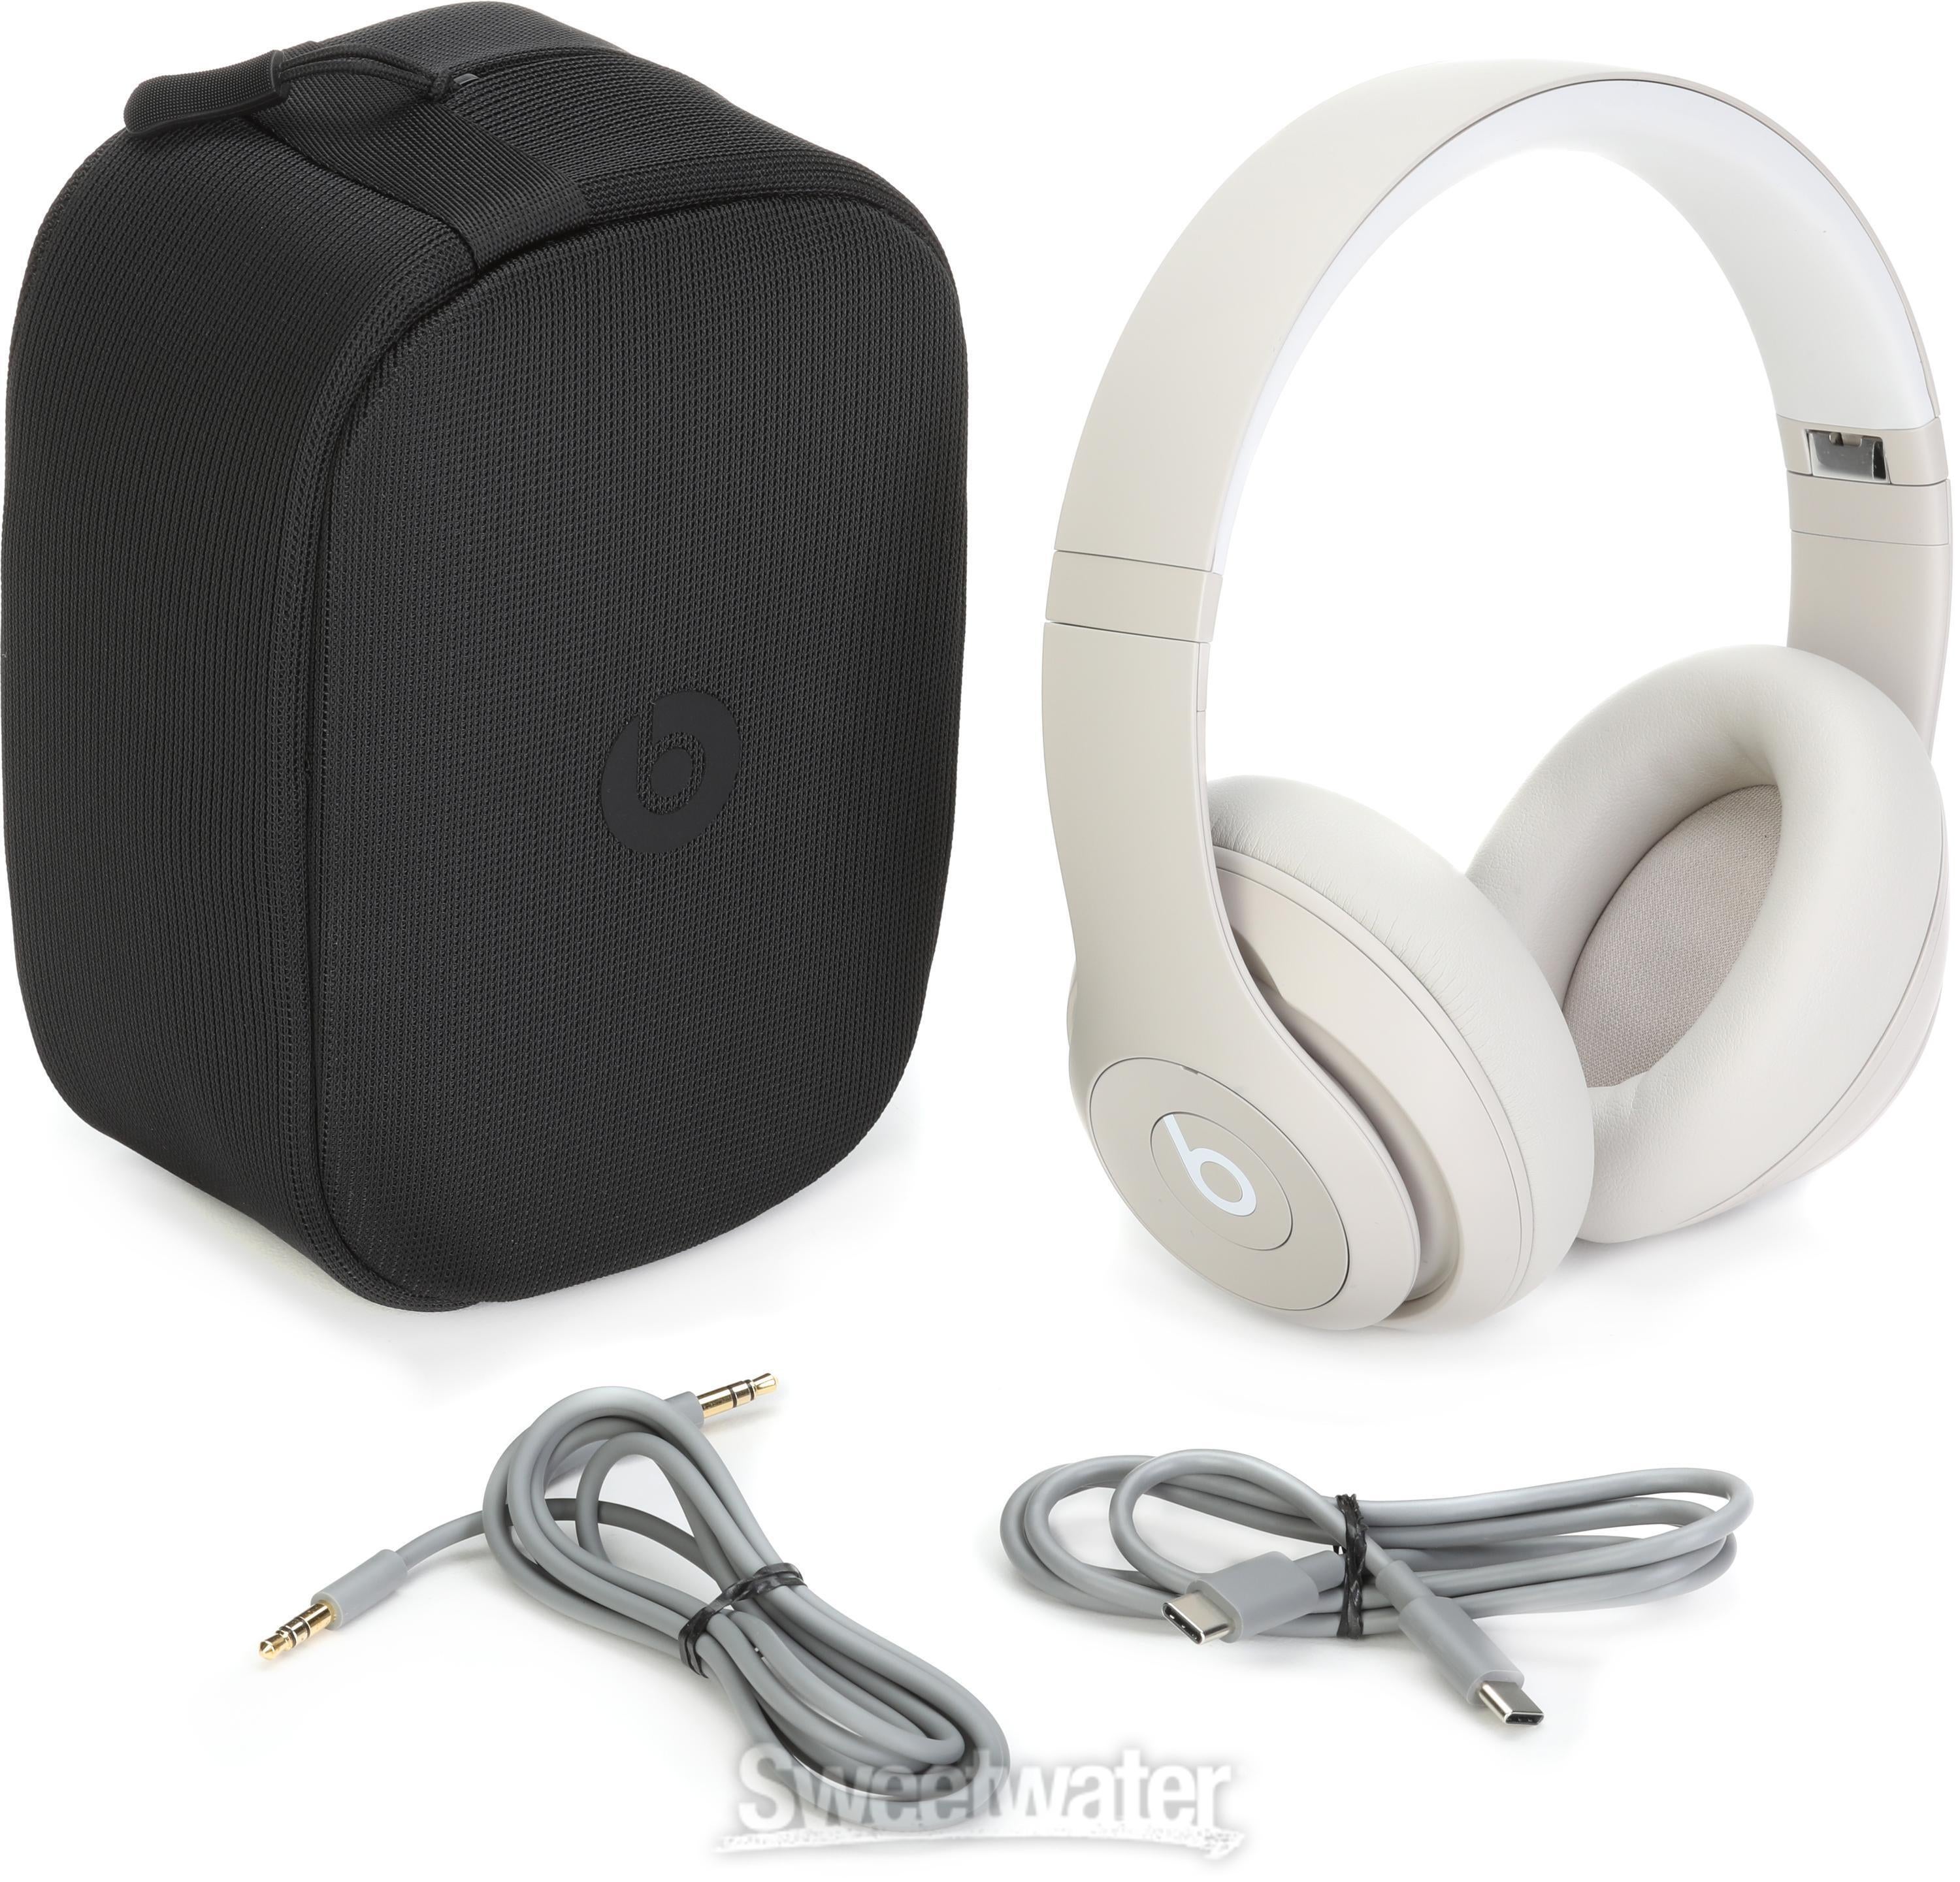 Beats Studio Pro Wireless Headphones - Sandstone | Sweetwater